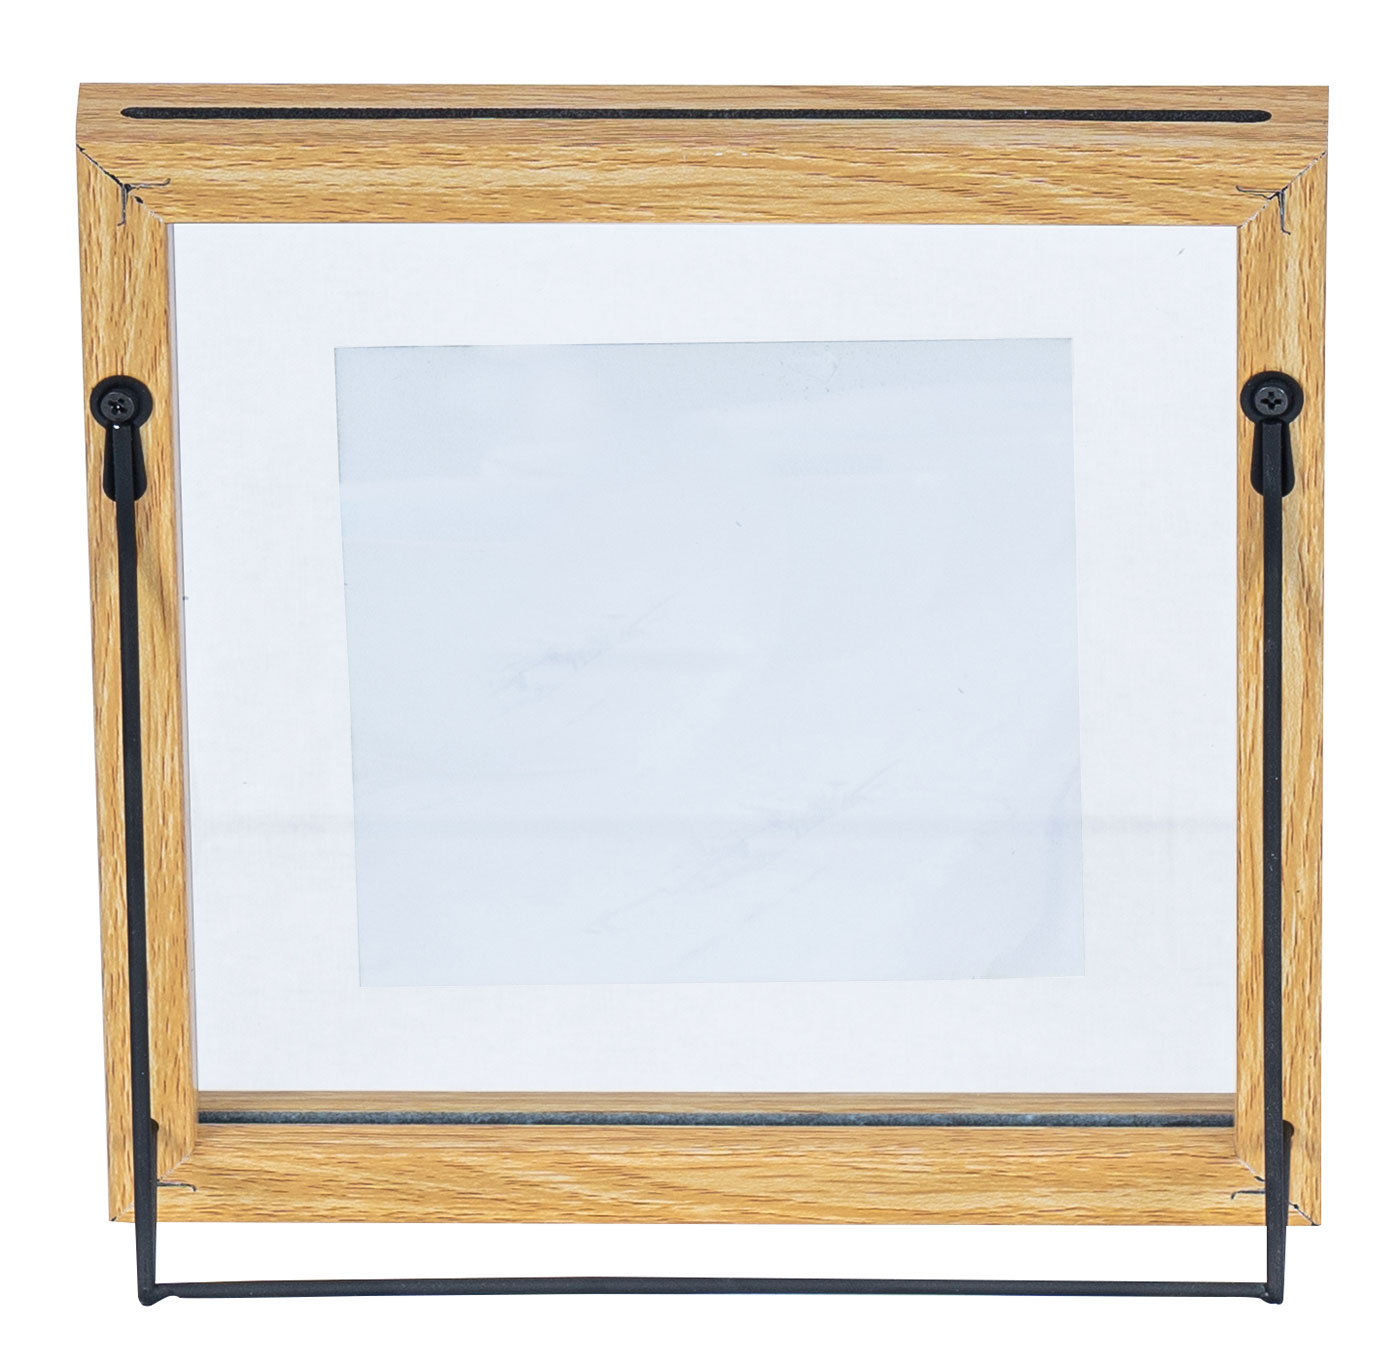 3er Set Bilderrahmen Aufsteller 10x10 Holz Eiche-Optik Metall Glas Fotorahmen